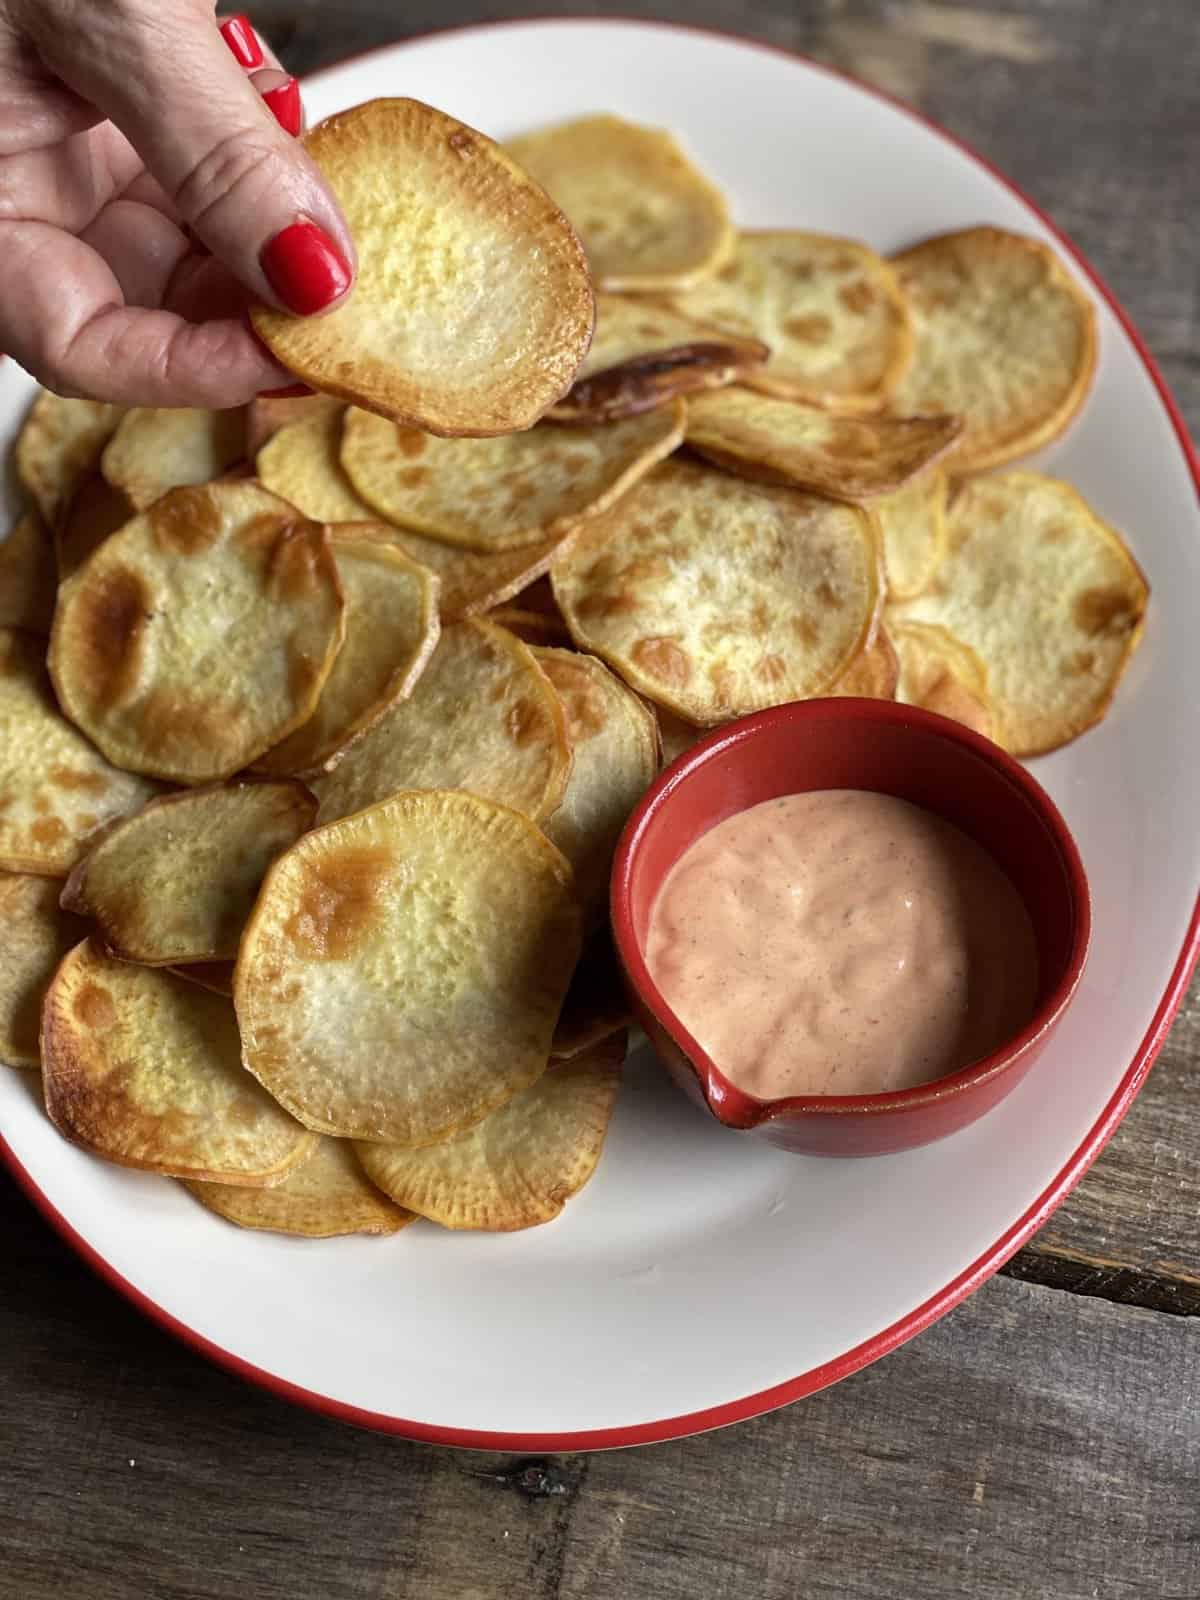 Sweet Potato Crisps – Teri Turner of No Crumbs Left